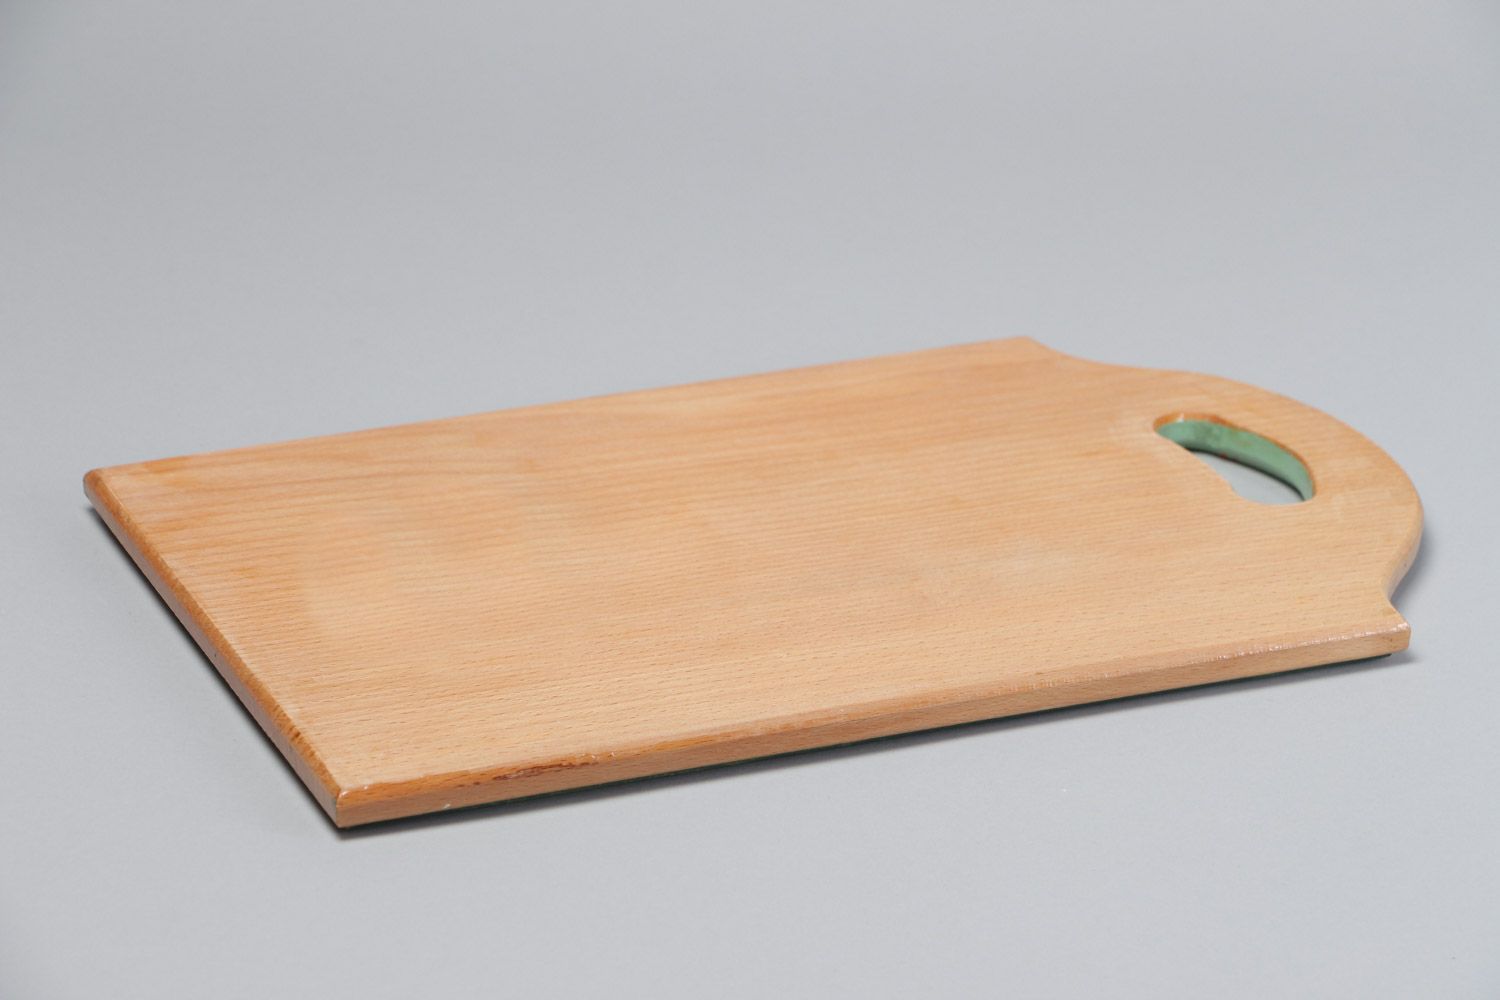 Прямоугольная деревянная разделочная доска яркая расписная ручной работы фото 4